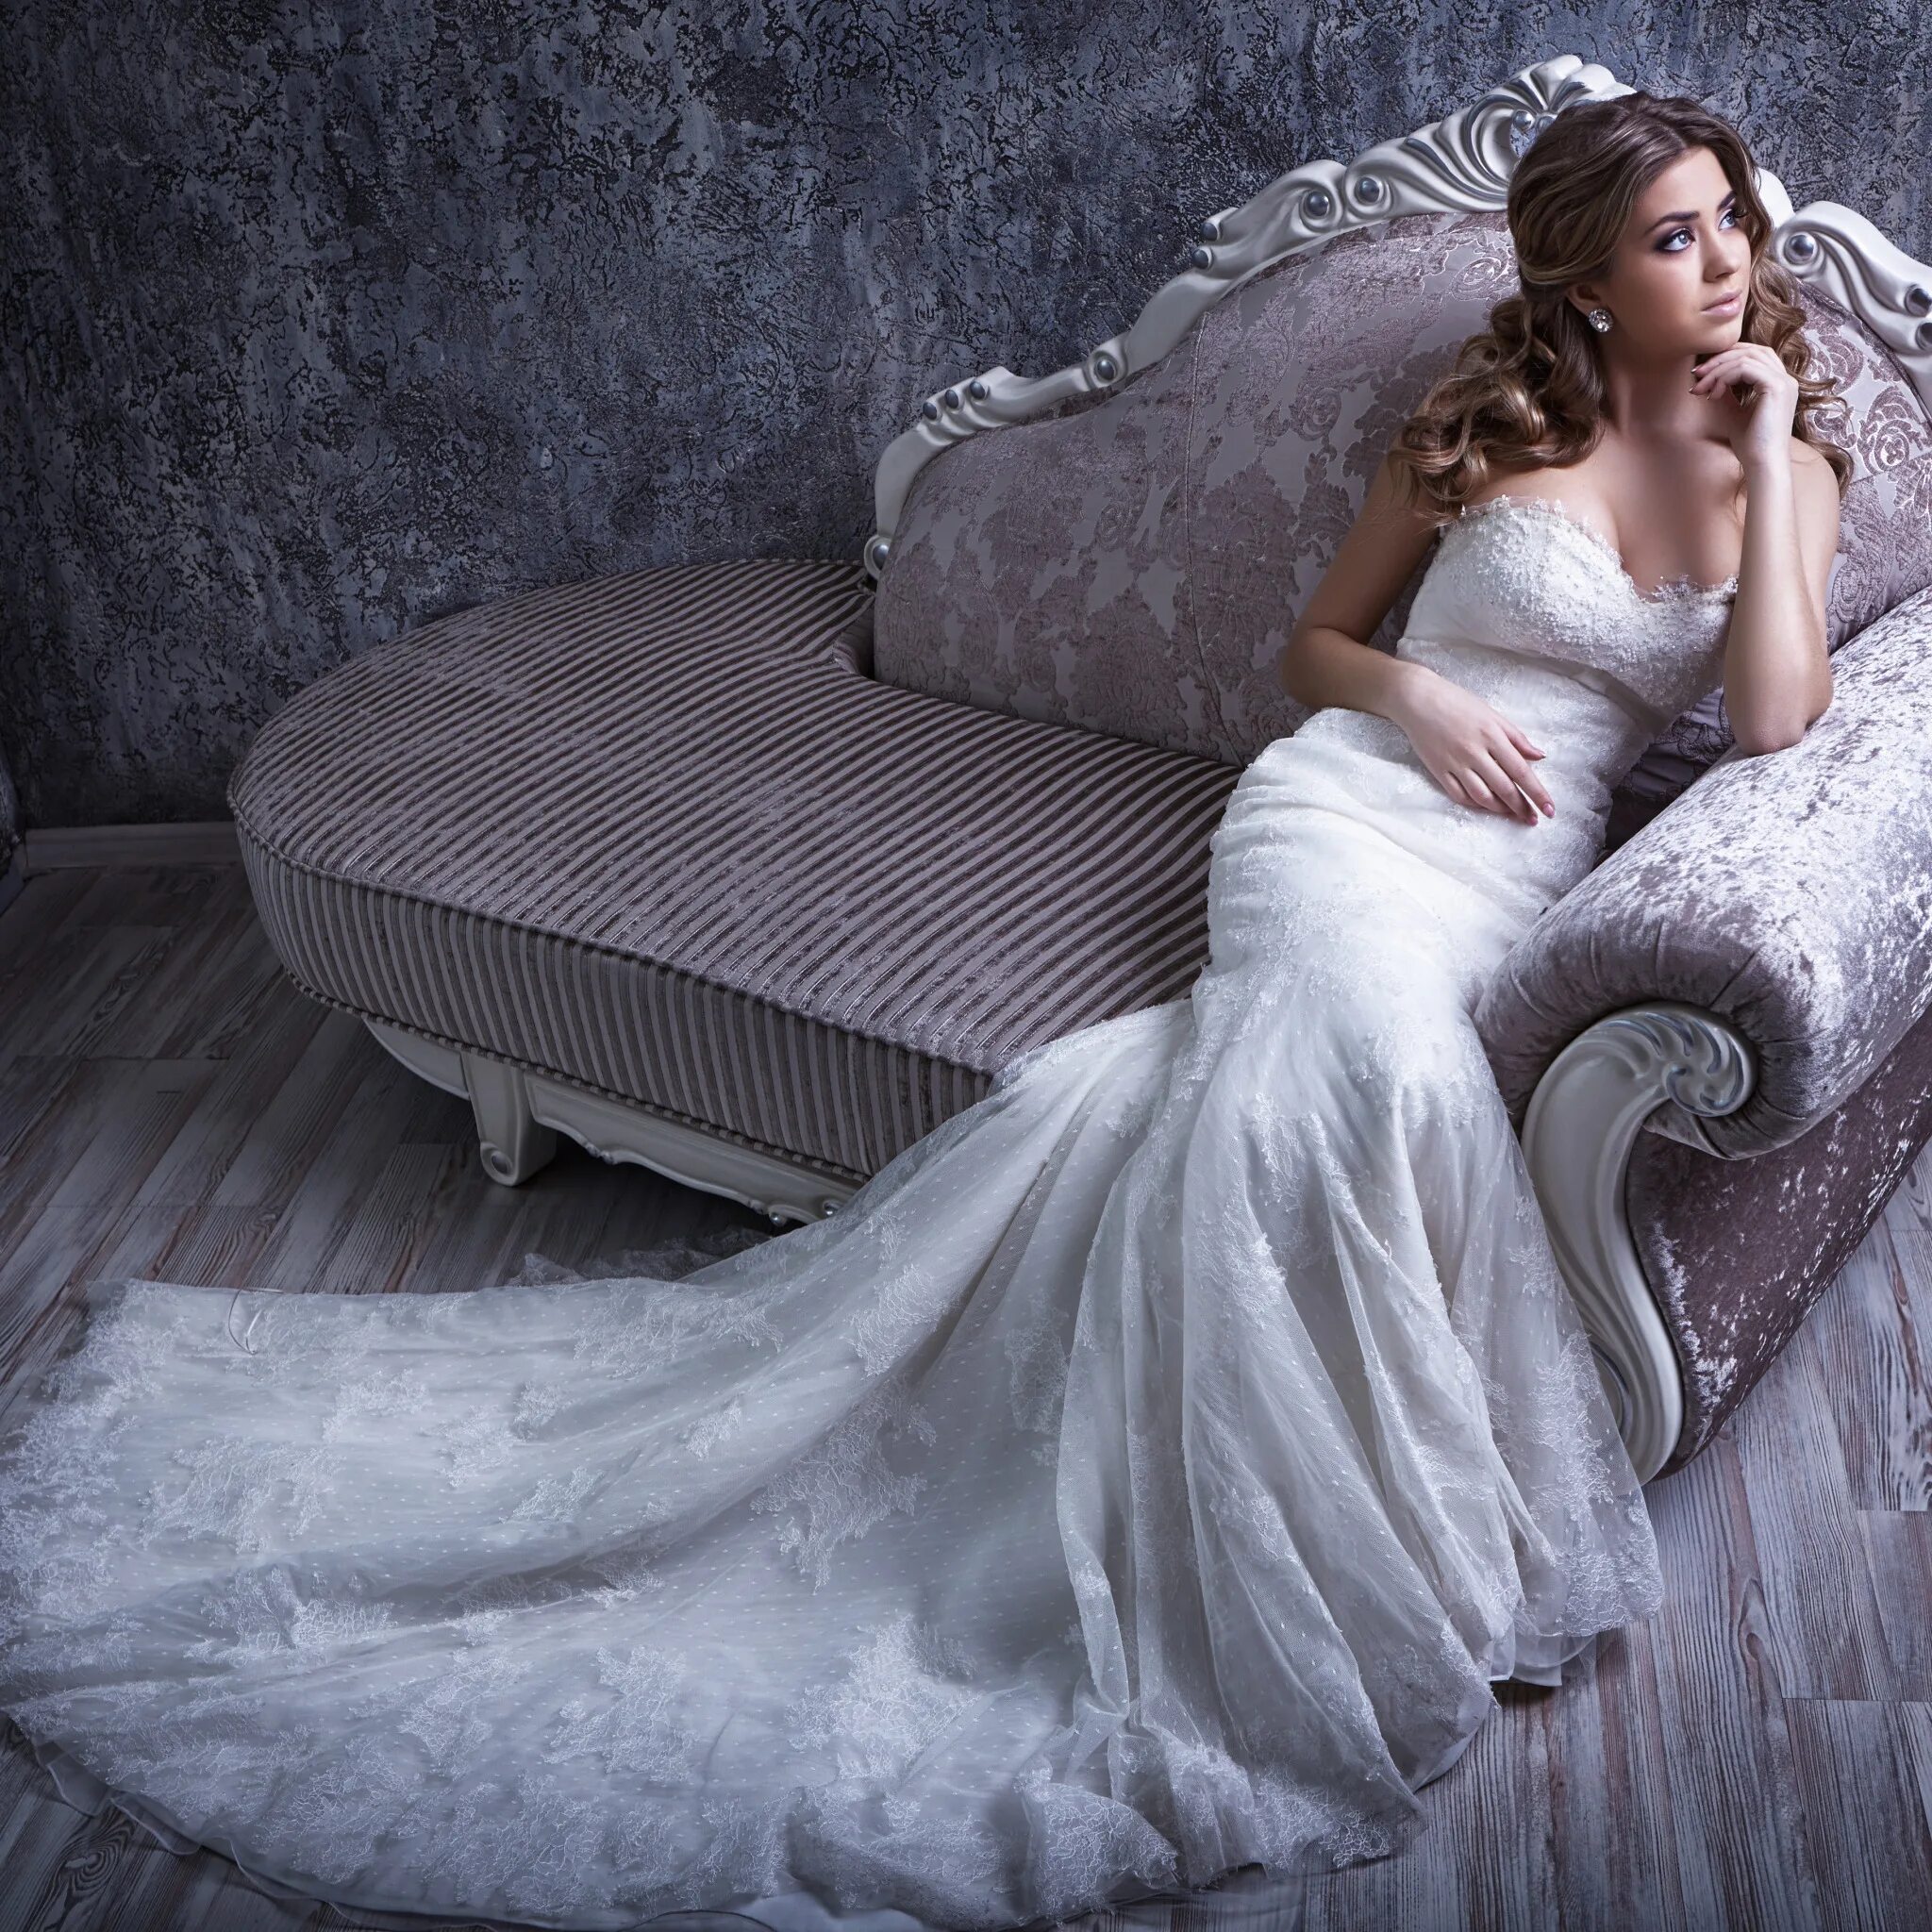 Сонник быть в платье. Фотосессия на диване в платье. Невеста в платье сидит. Позы для фотосессии в пышном платье. Свадебное платье на кровати.